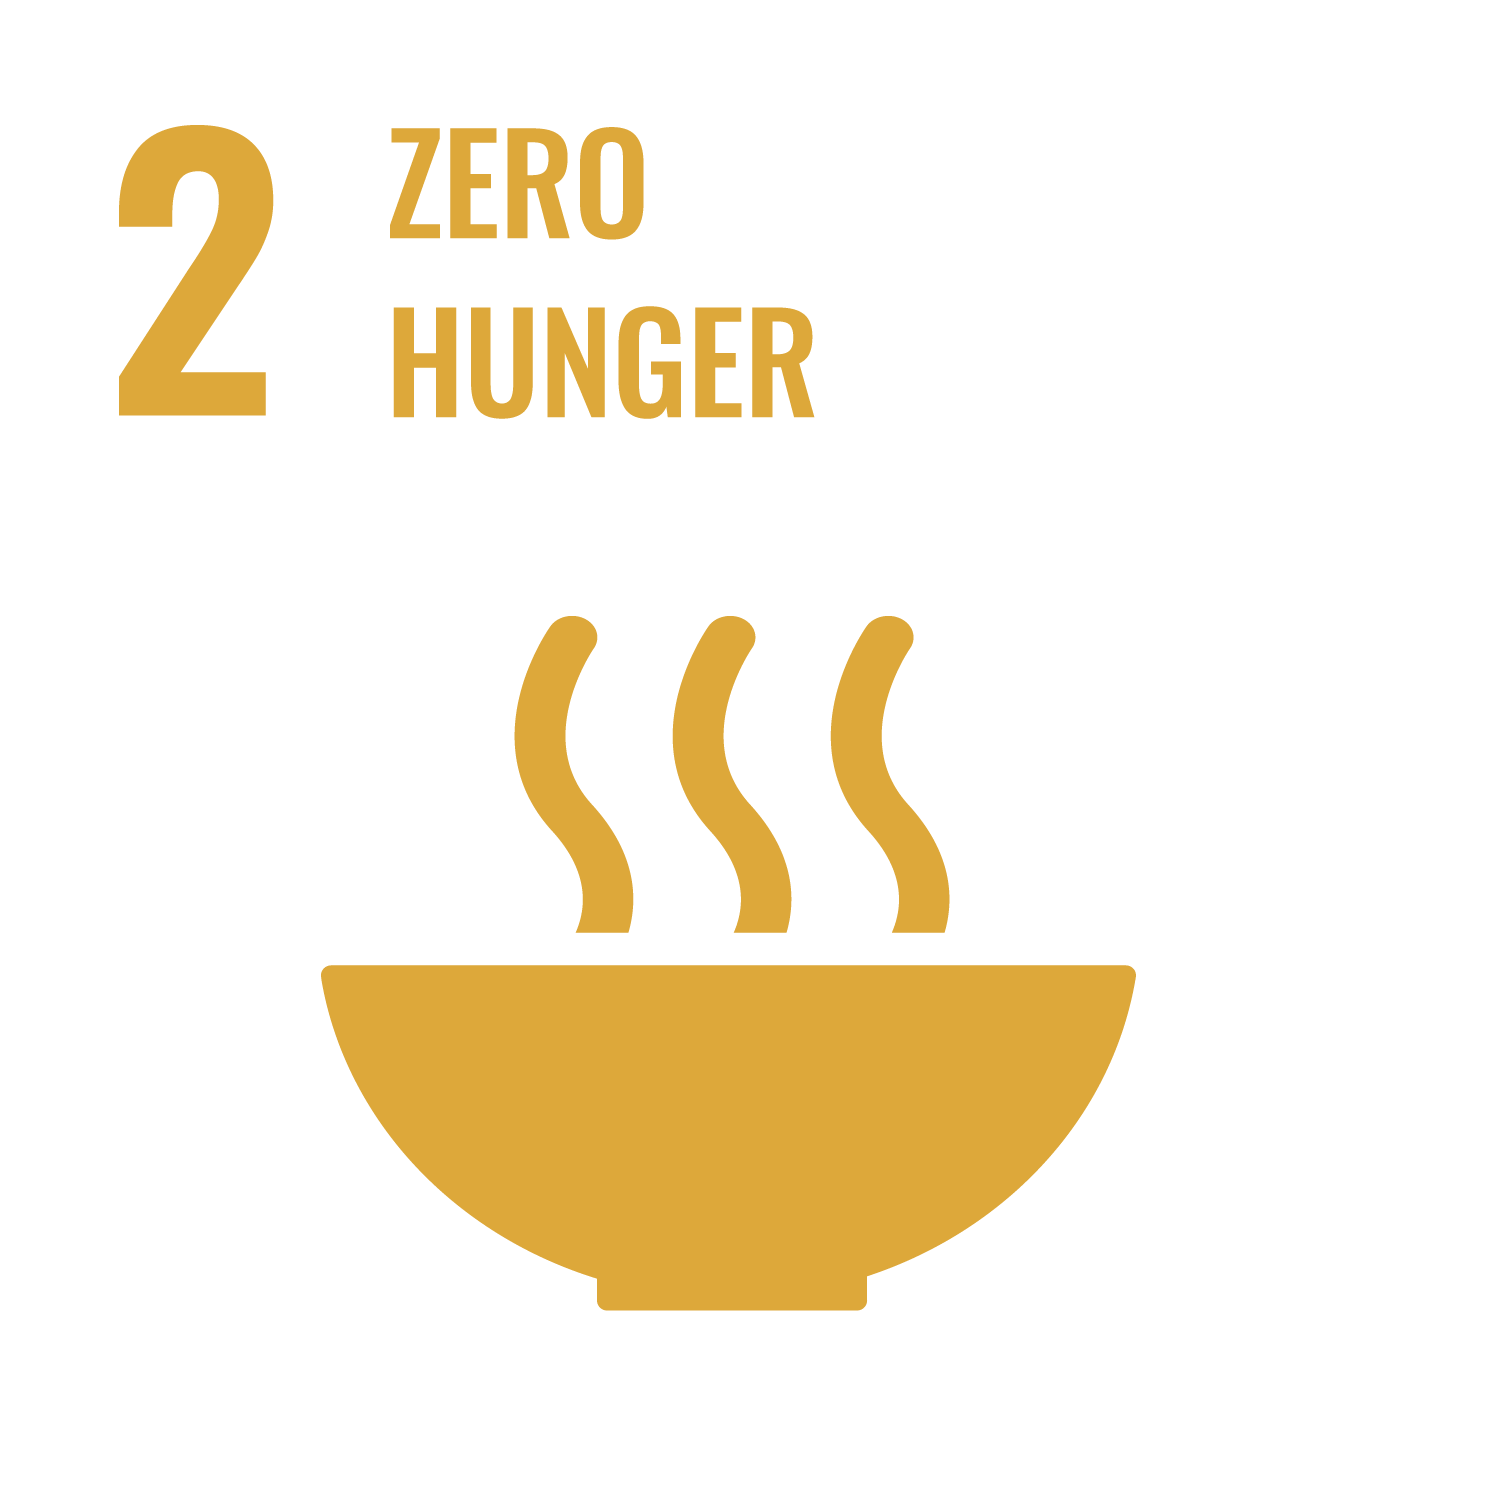 Zero hunger - Goal 2